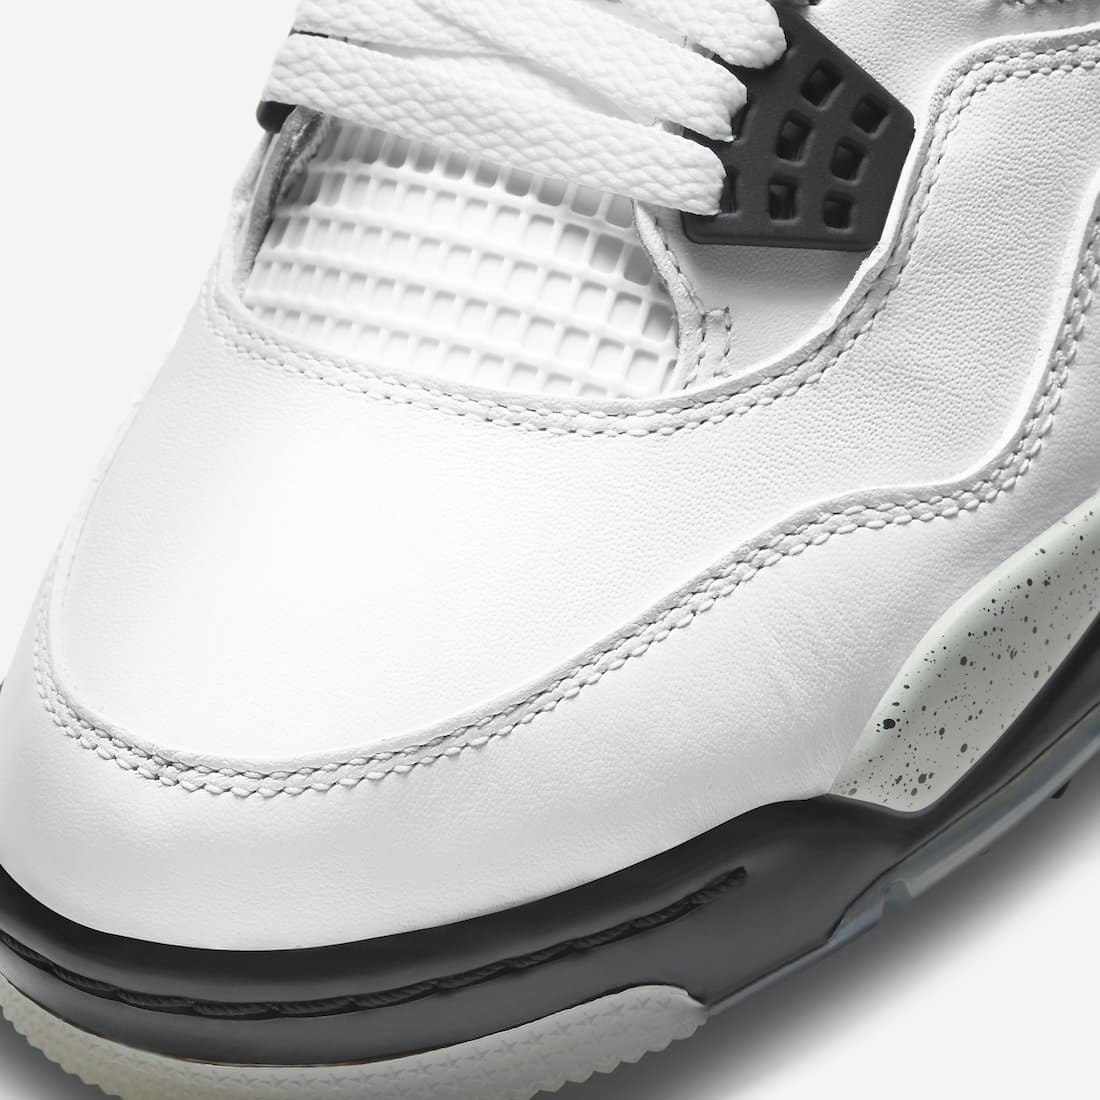 Air Jordan 4 Golf “White Cement”